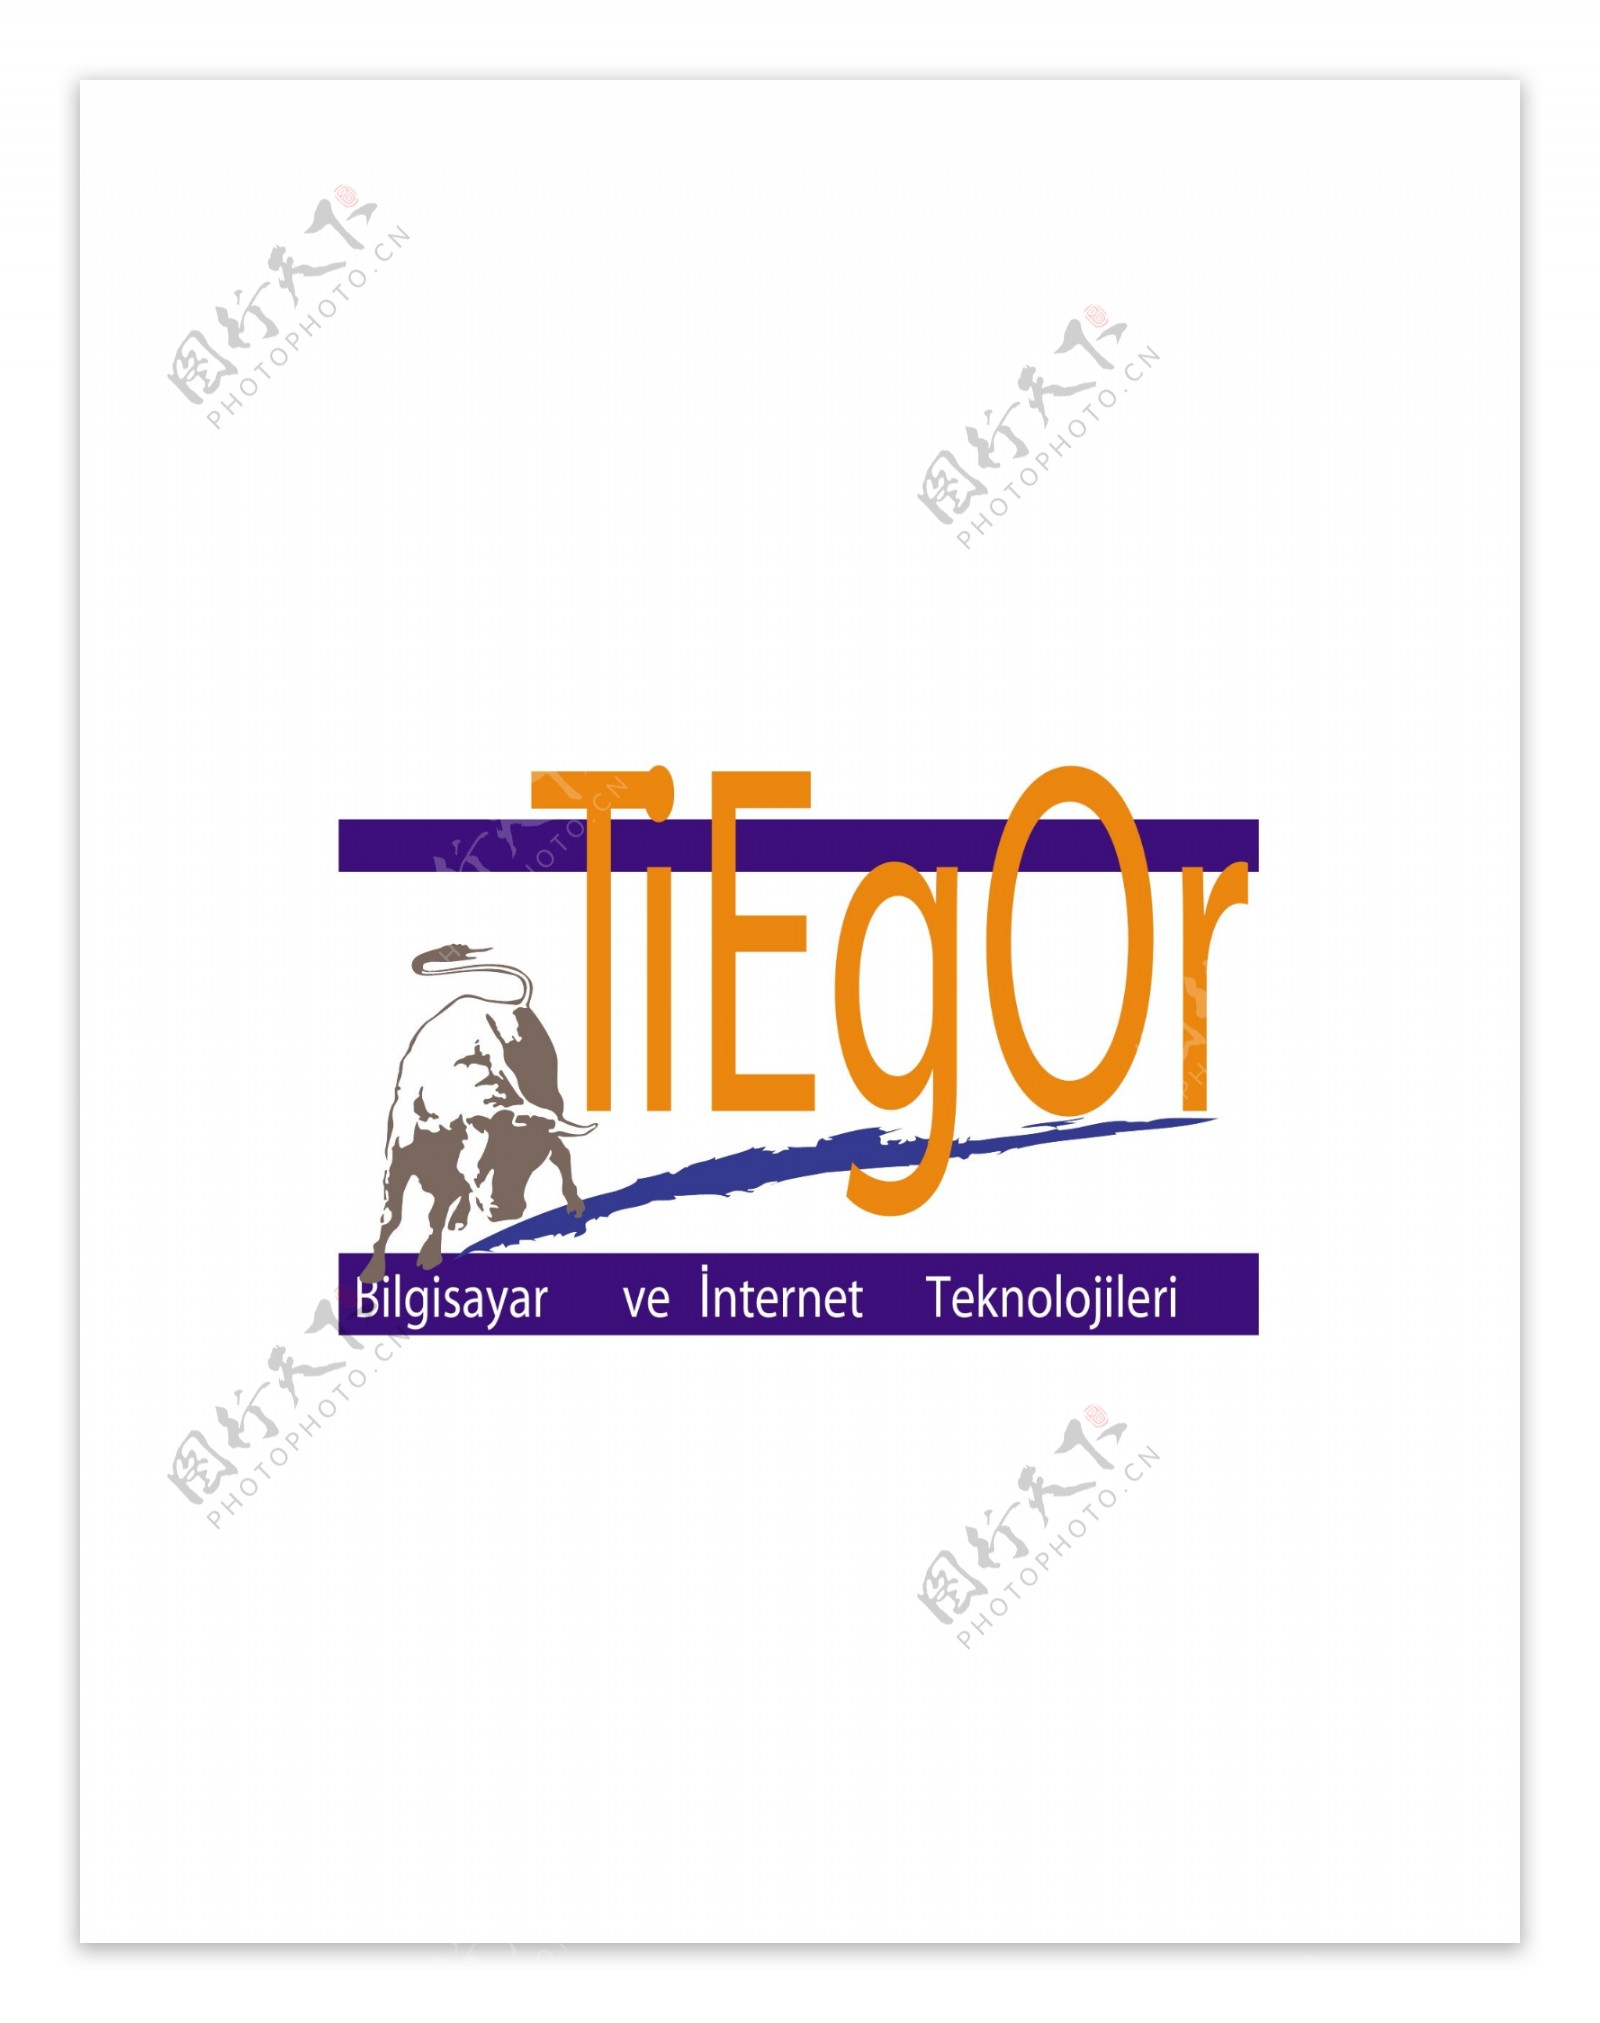 tiegorlogo设计欣赏tiegor网络公司LOGO下载标志设计欣赏